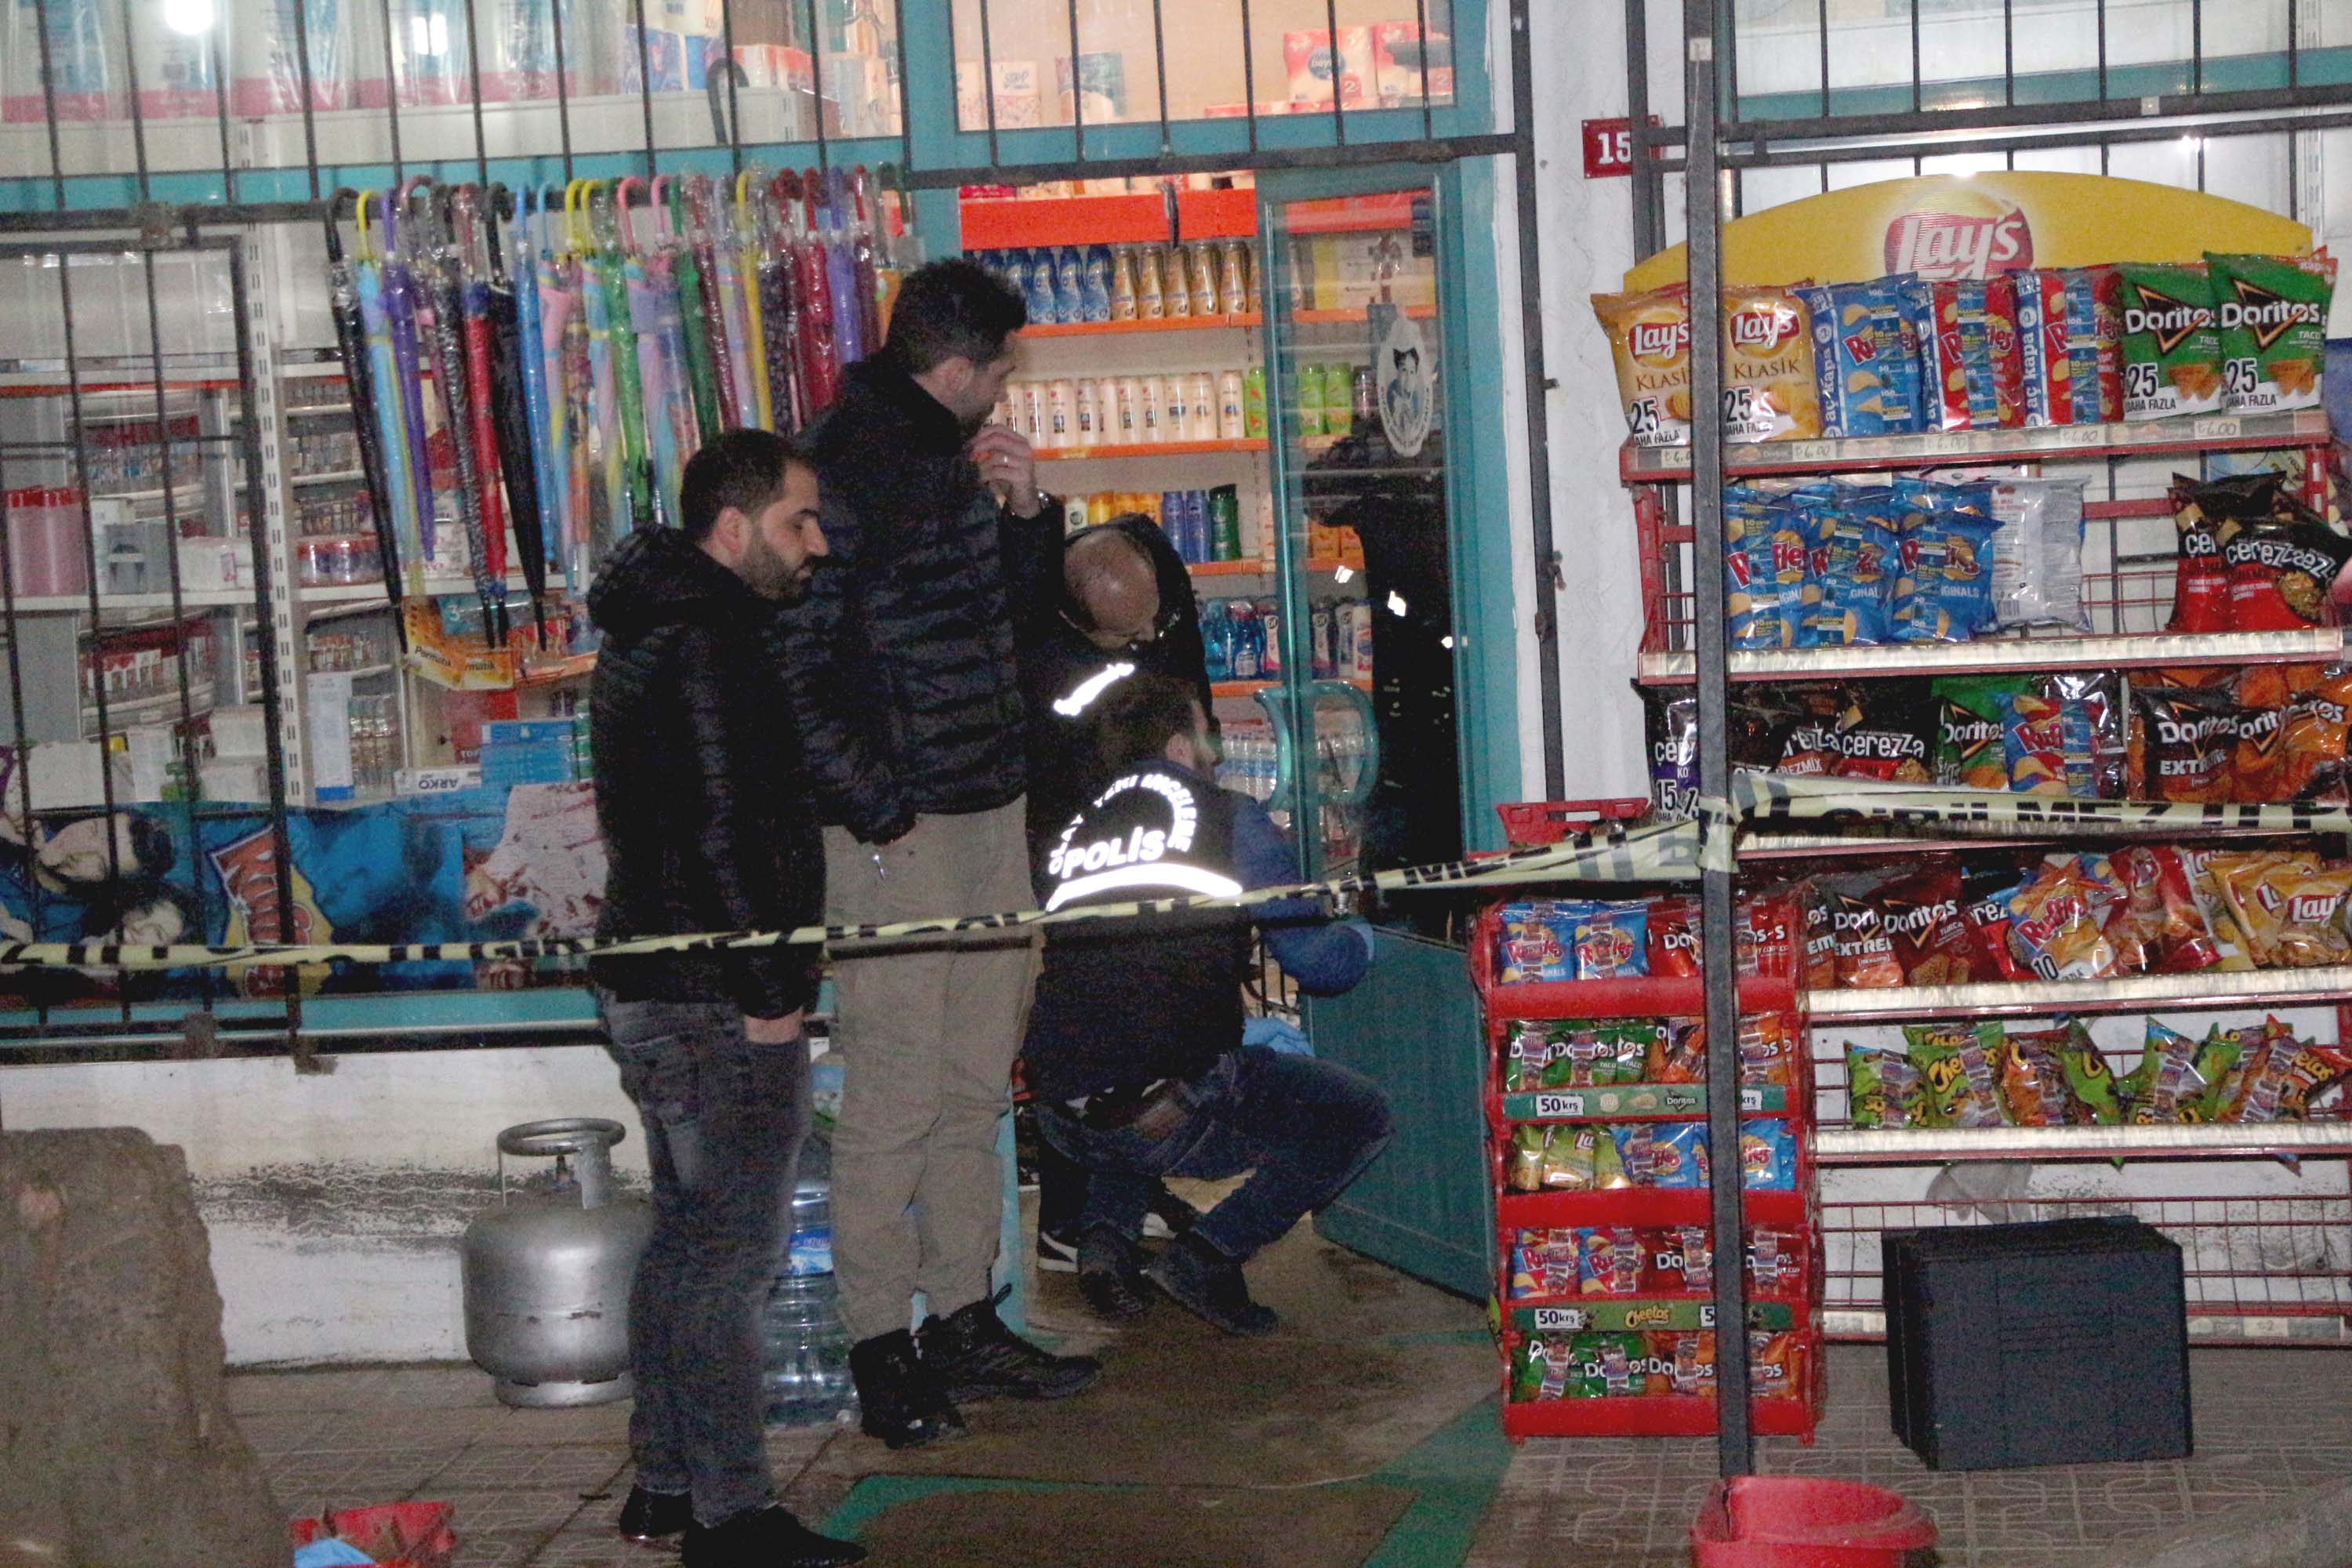 Tuzla silahlı market soygunu: 1 yaralı